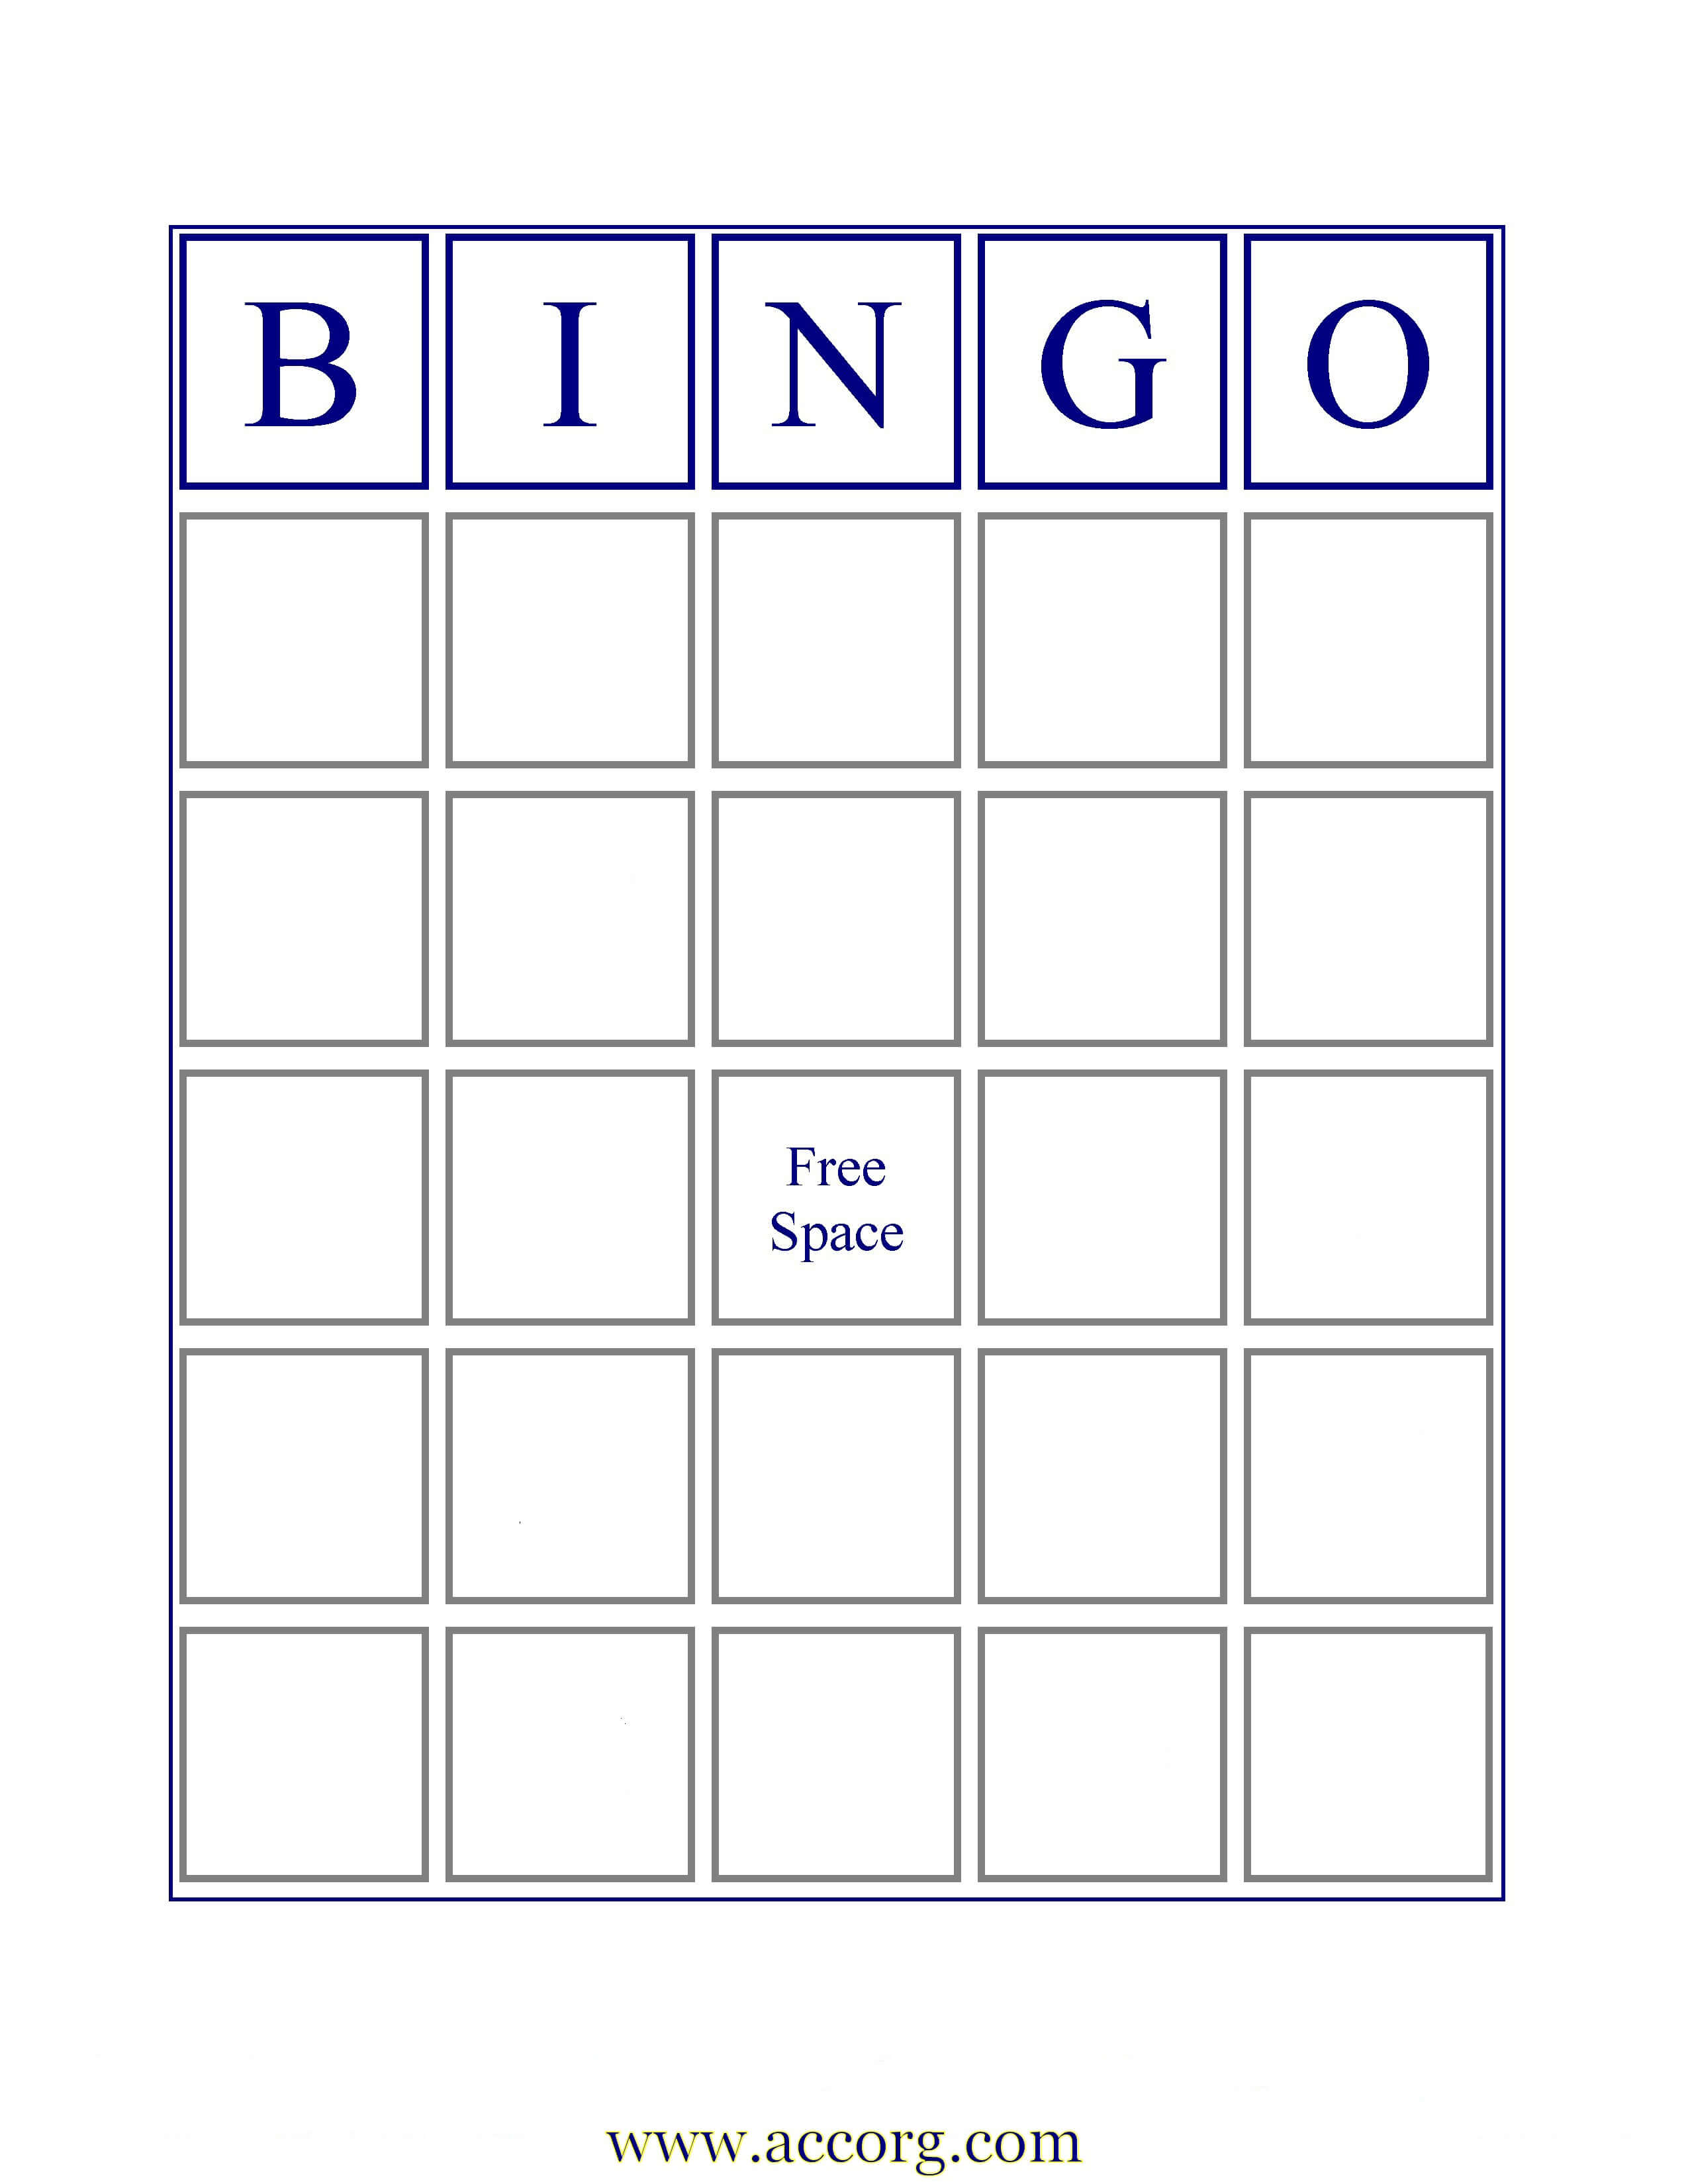 013 Template Ideas Bingo Card Free Blank Cards 573651 With Regard To Bingo Card Template Word